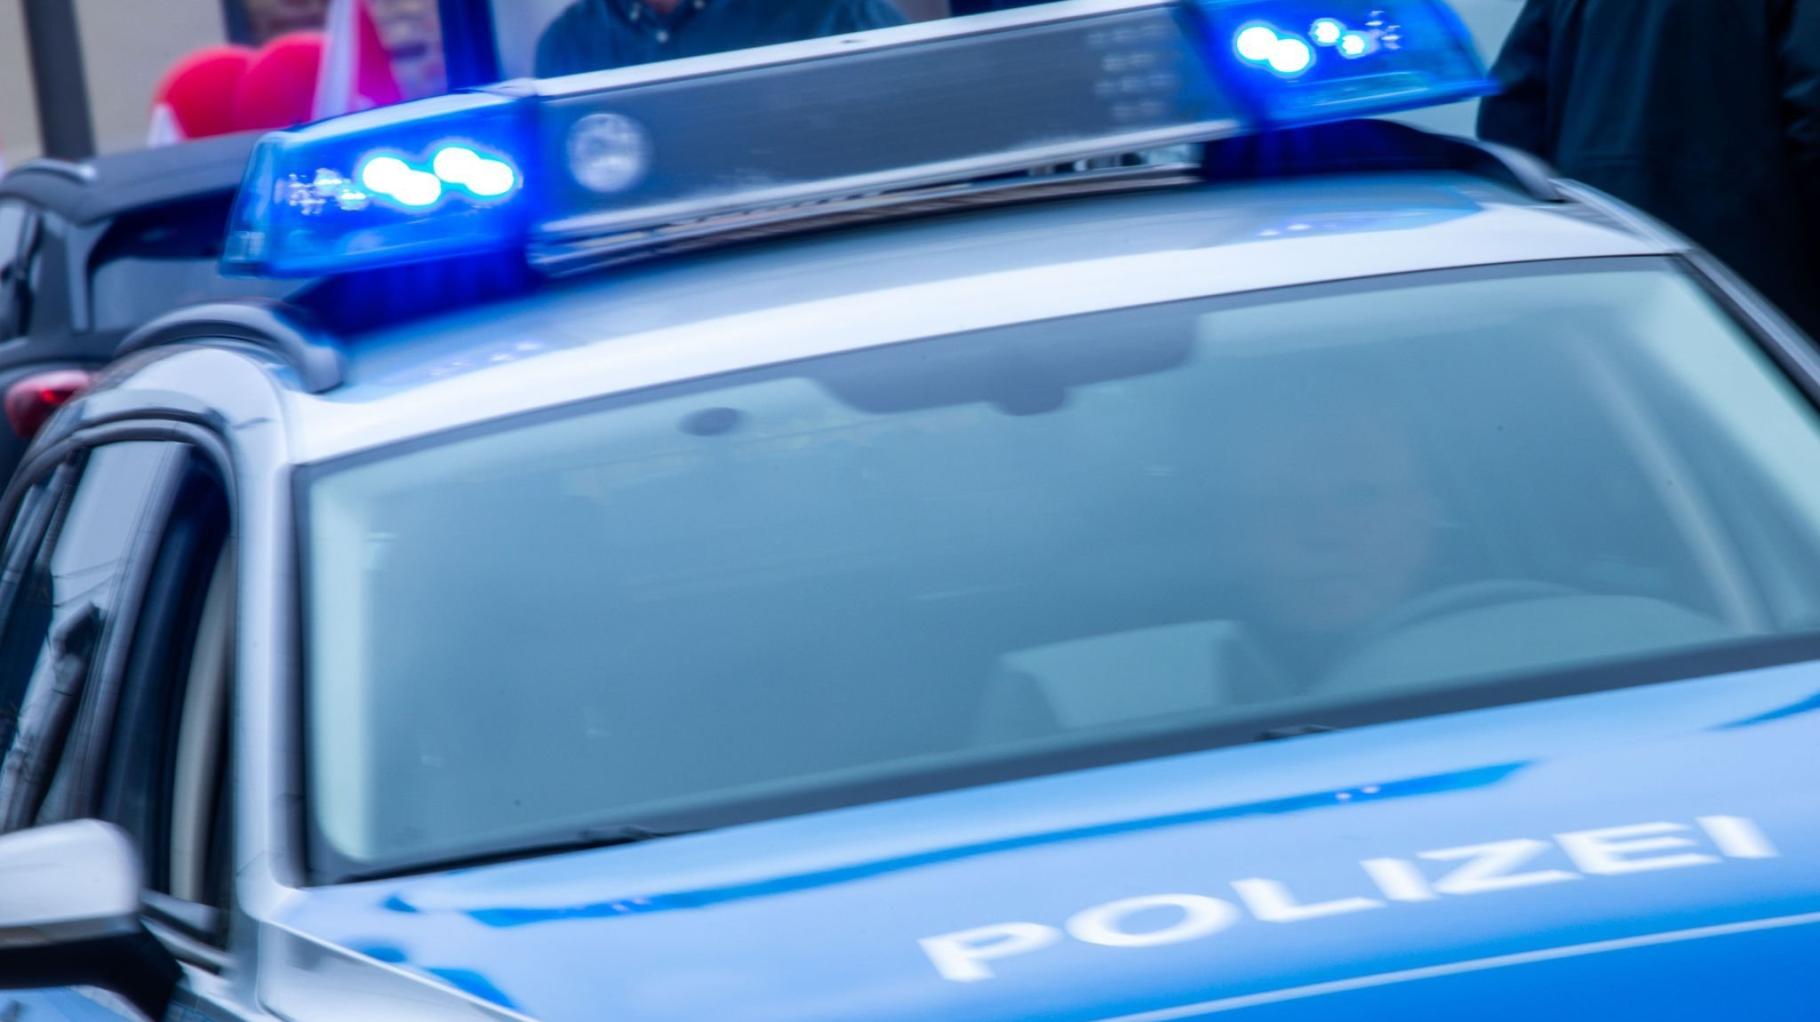 Jugendlicher verletzt anderen Schüler in Rostock mit Messer